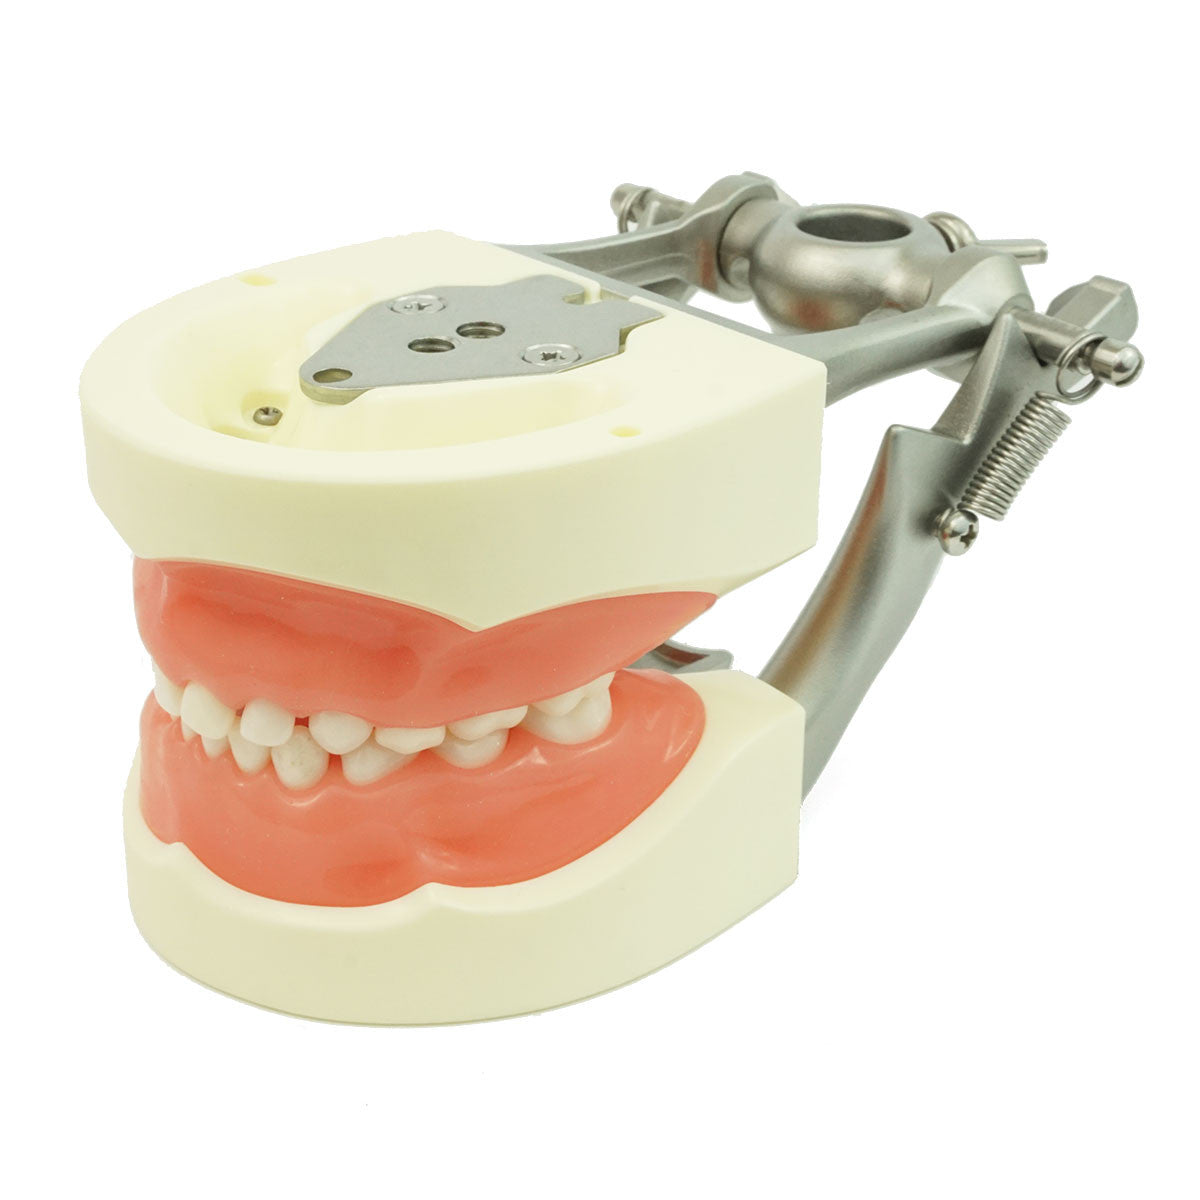 Full Primary Dentition Typodont Model